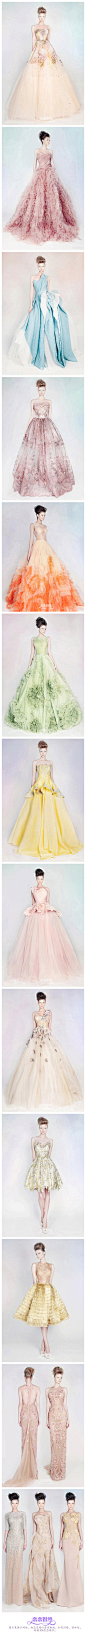 【品牌推荐】Rami Kadi 2013 「空中花园」系列，告诉你彩色婚纱也可以很仙很淡雅，你喜欢哪一款？